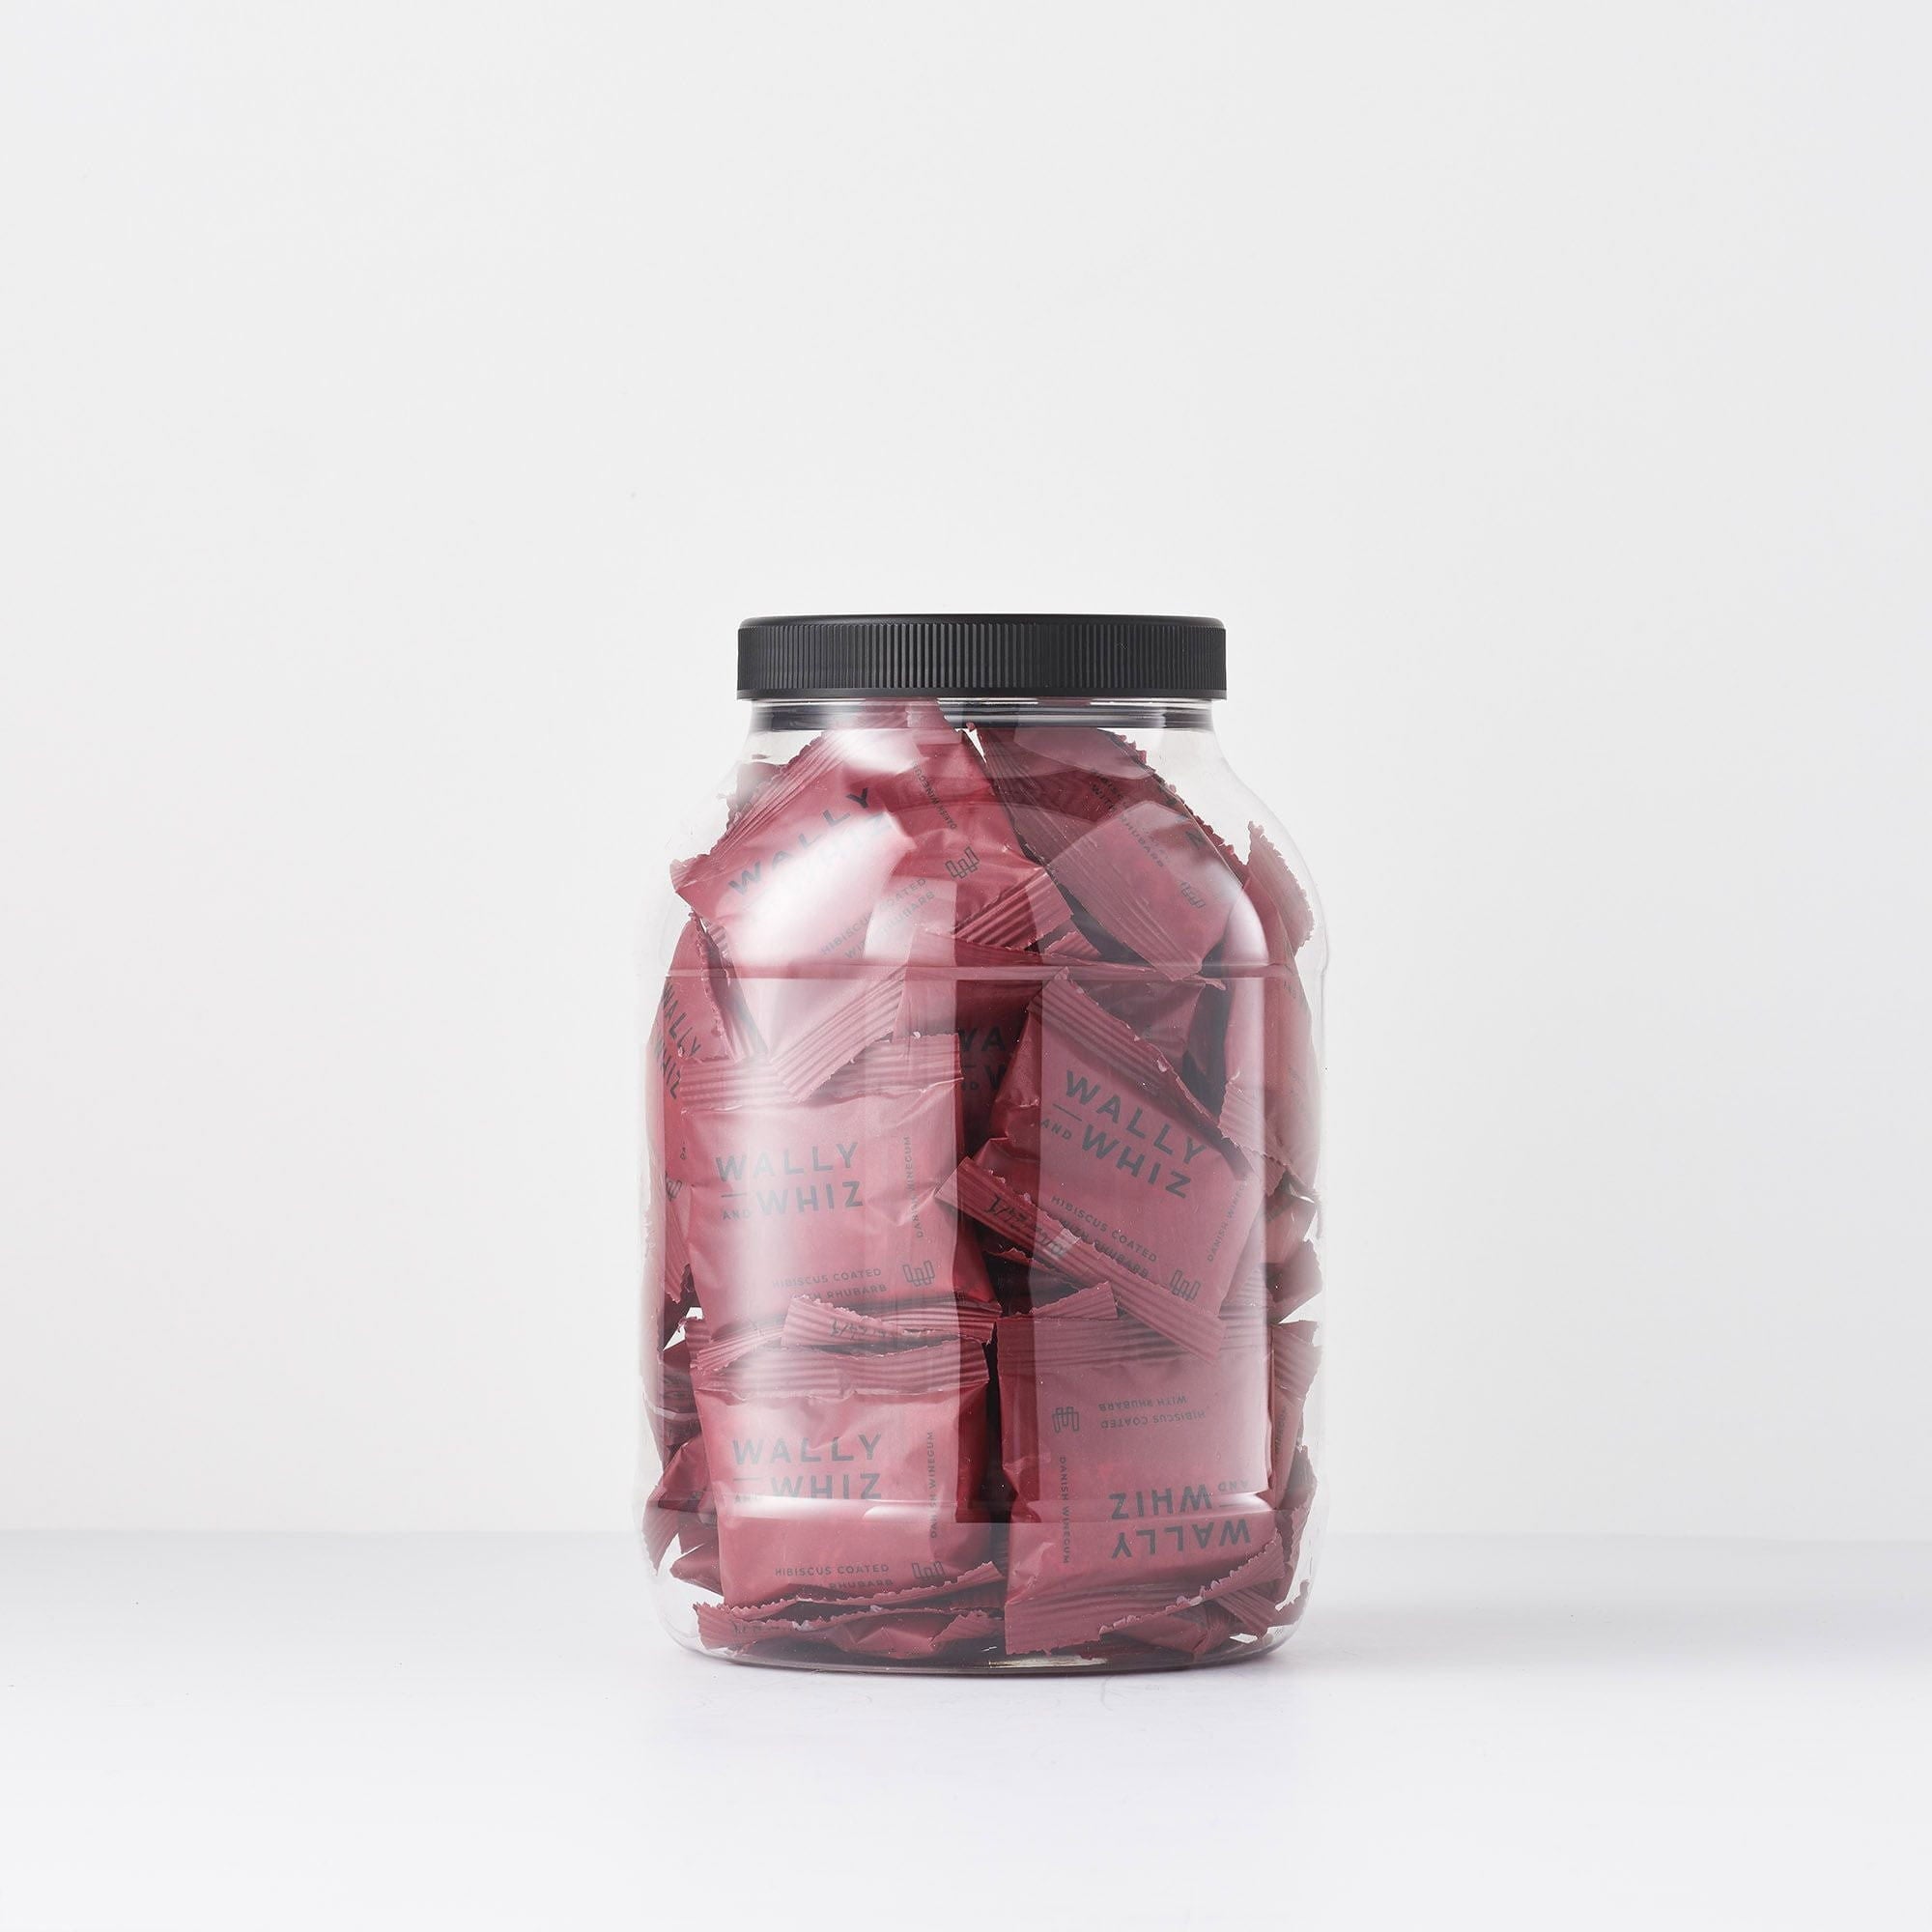 Wally y Whiz Wine Gum Jar con 50 paquetes de flujo, hibisco con ruibarbo